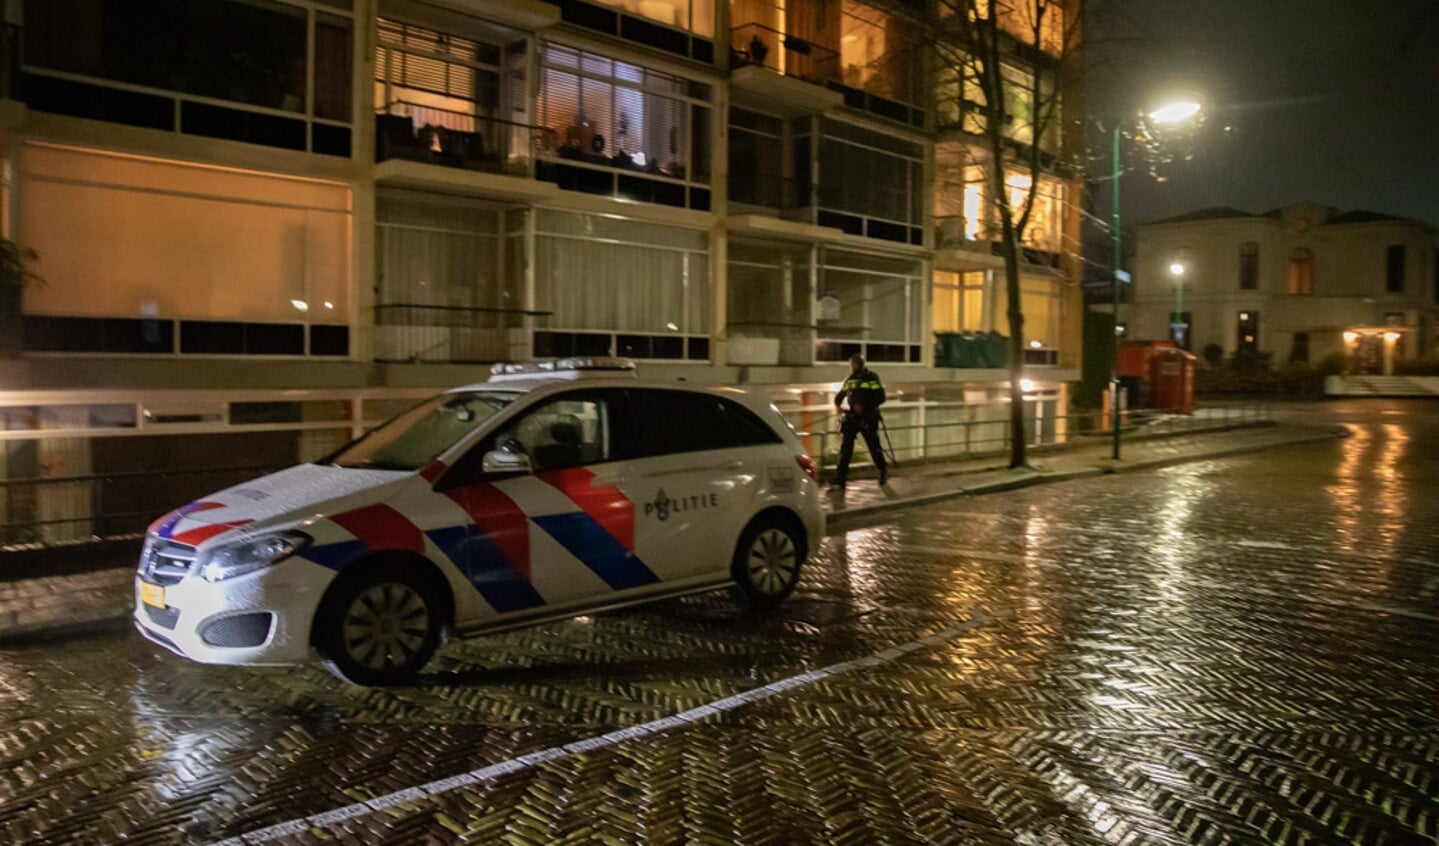 Even na 20.00 uur zocht de politie met veel agenten in de omgeving van flat Merelhof. 